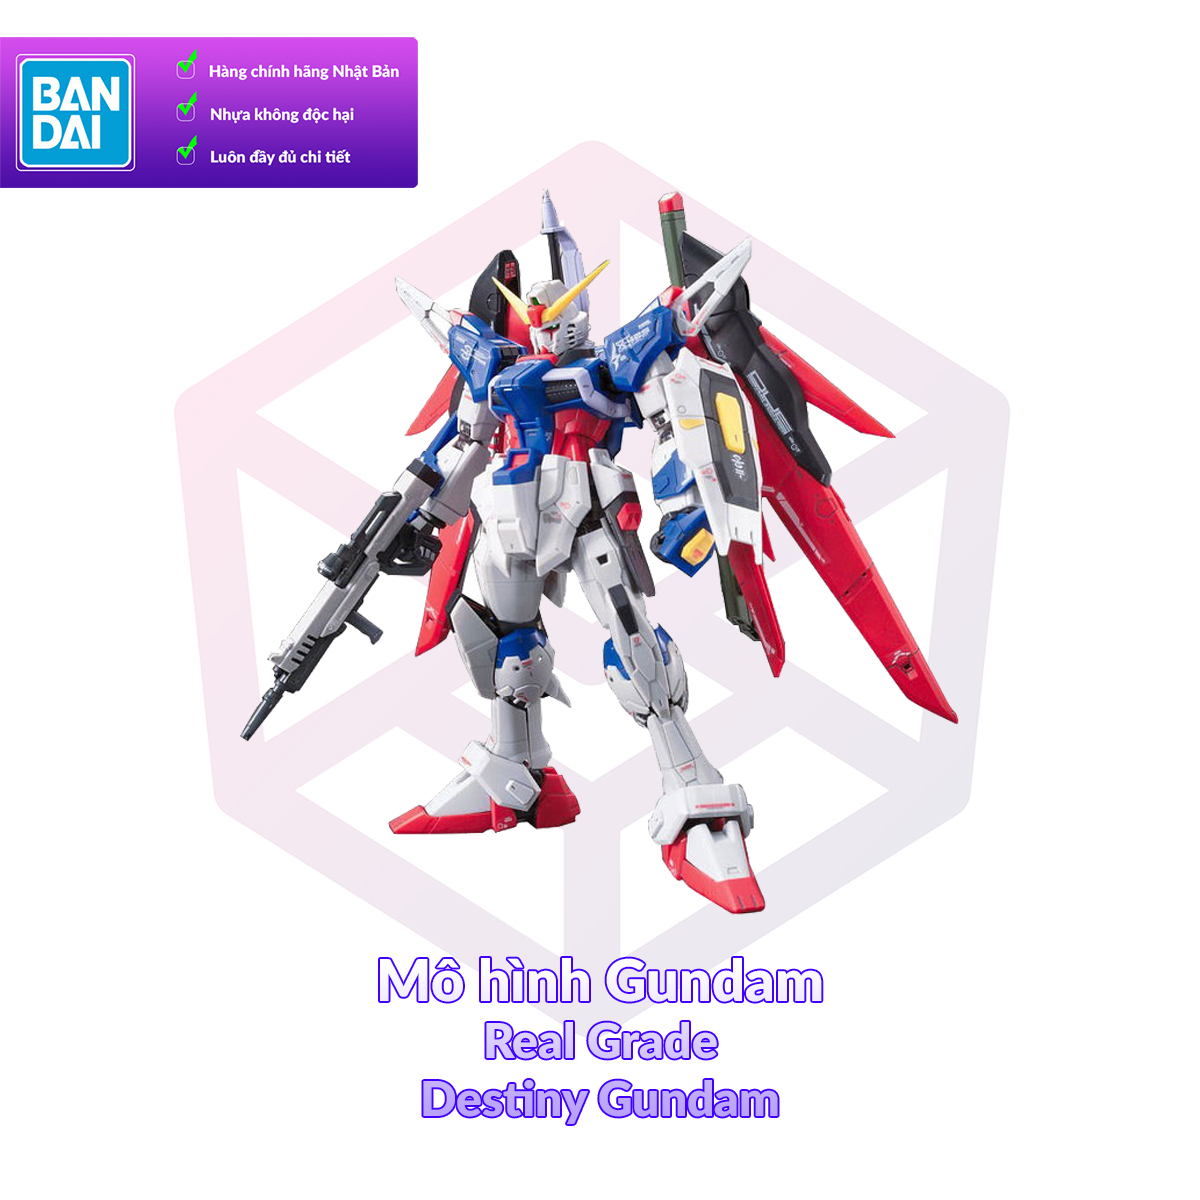 7-11 12 VOUCHER 8%Mô hình Gundam Bandai RG 11 Destiny Gundam 1 144 SEED